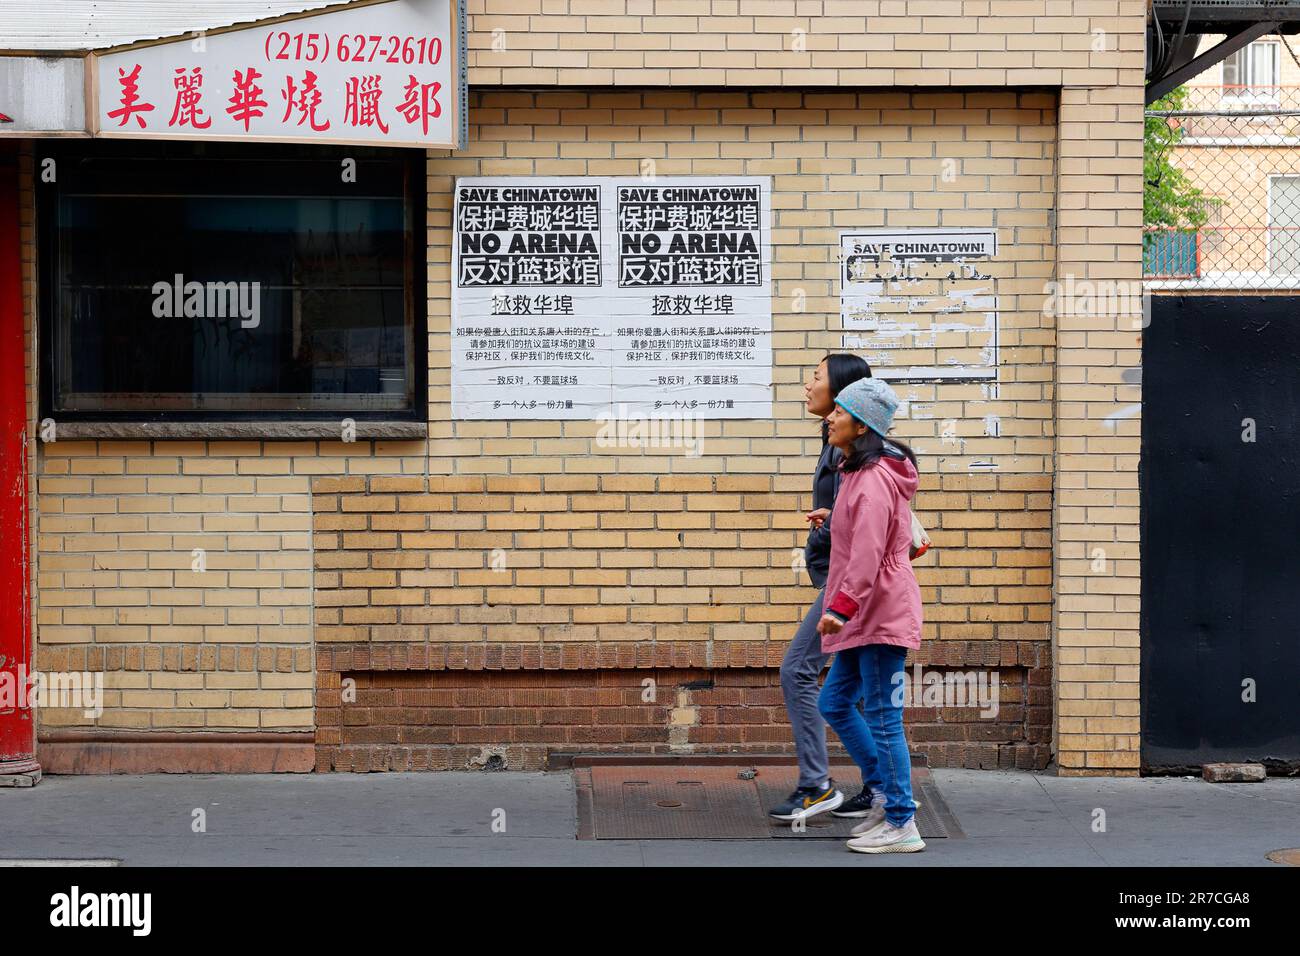 10 juin 2023, Philadelphie. Pas d'arène dans Chinatown. Les gens marchent devant des affiches sur un mur contre une arène proposée dans Chinatown (voir info add'l). Banque D'Images